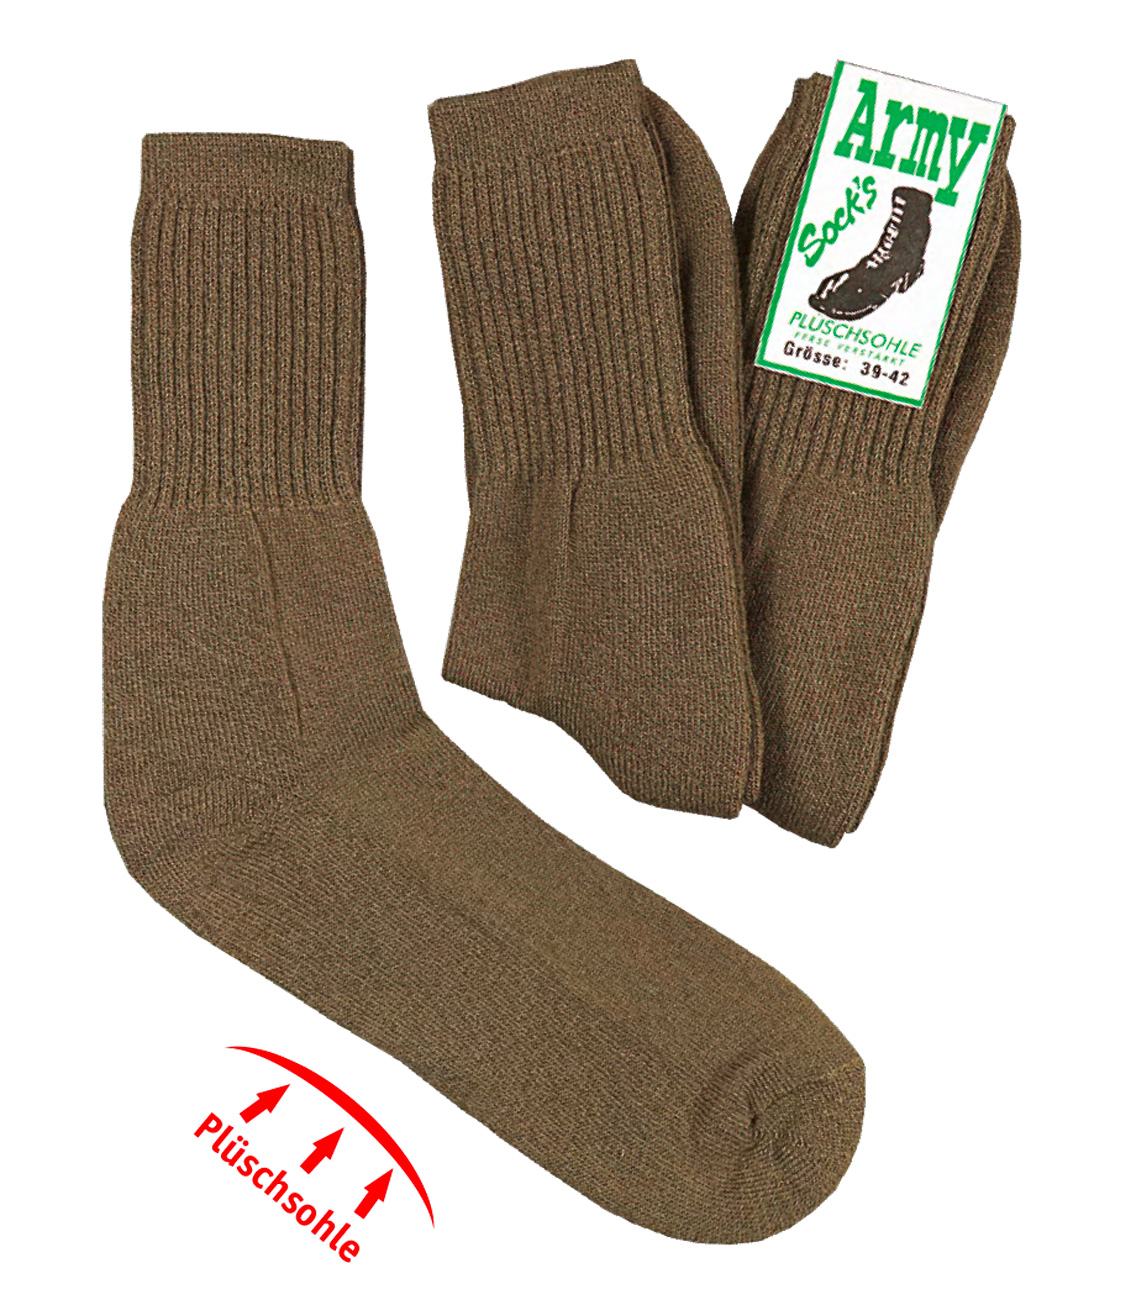 WOWERAT-Socken Army-Style, mit Wolle, Plüschsohle, Vollfrotteeverstärkung, 3-er Pkg., oliv-grün